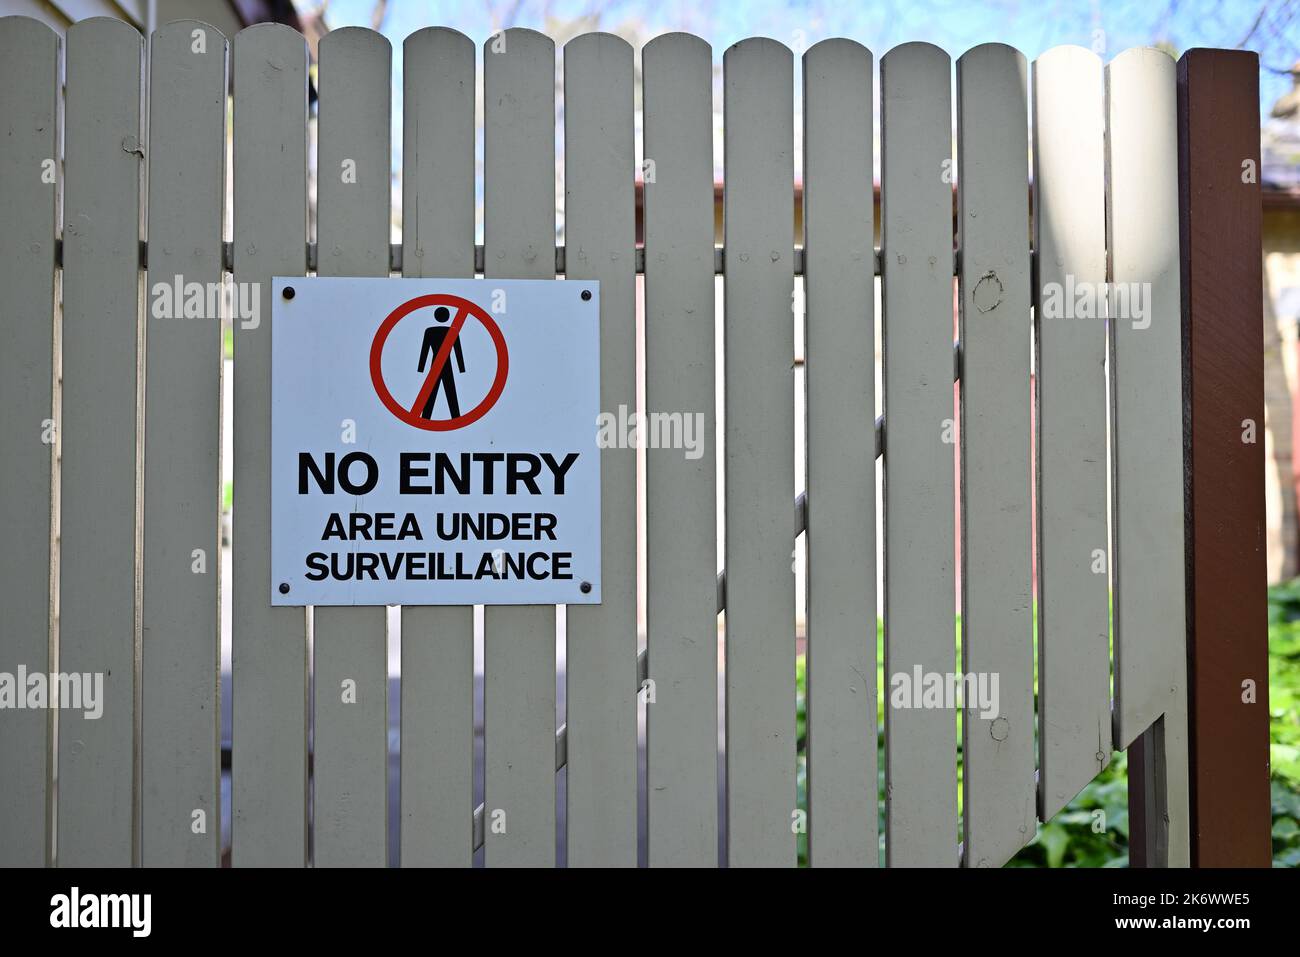 Zone d'interdiction d'entrée blanche, rouge et noire sous le panneau de surveillance sur une porte en bois de couleur crème, à l'ombre pendant une journée ensoleillée Banque D'Images